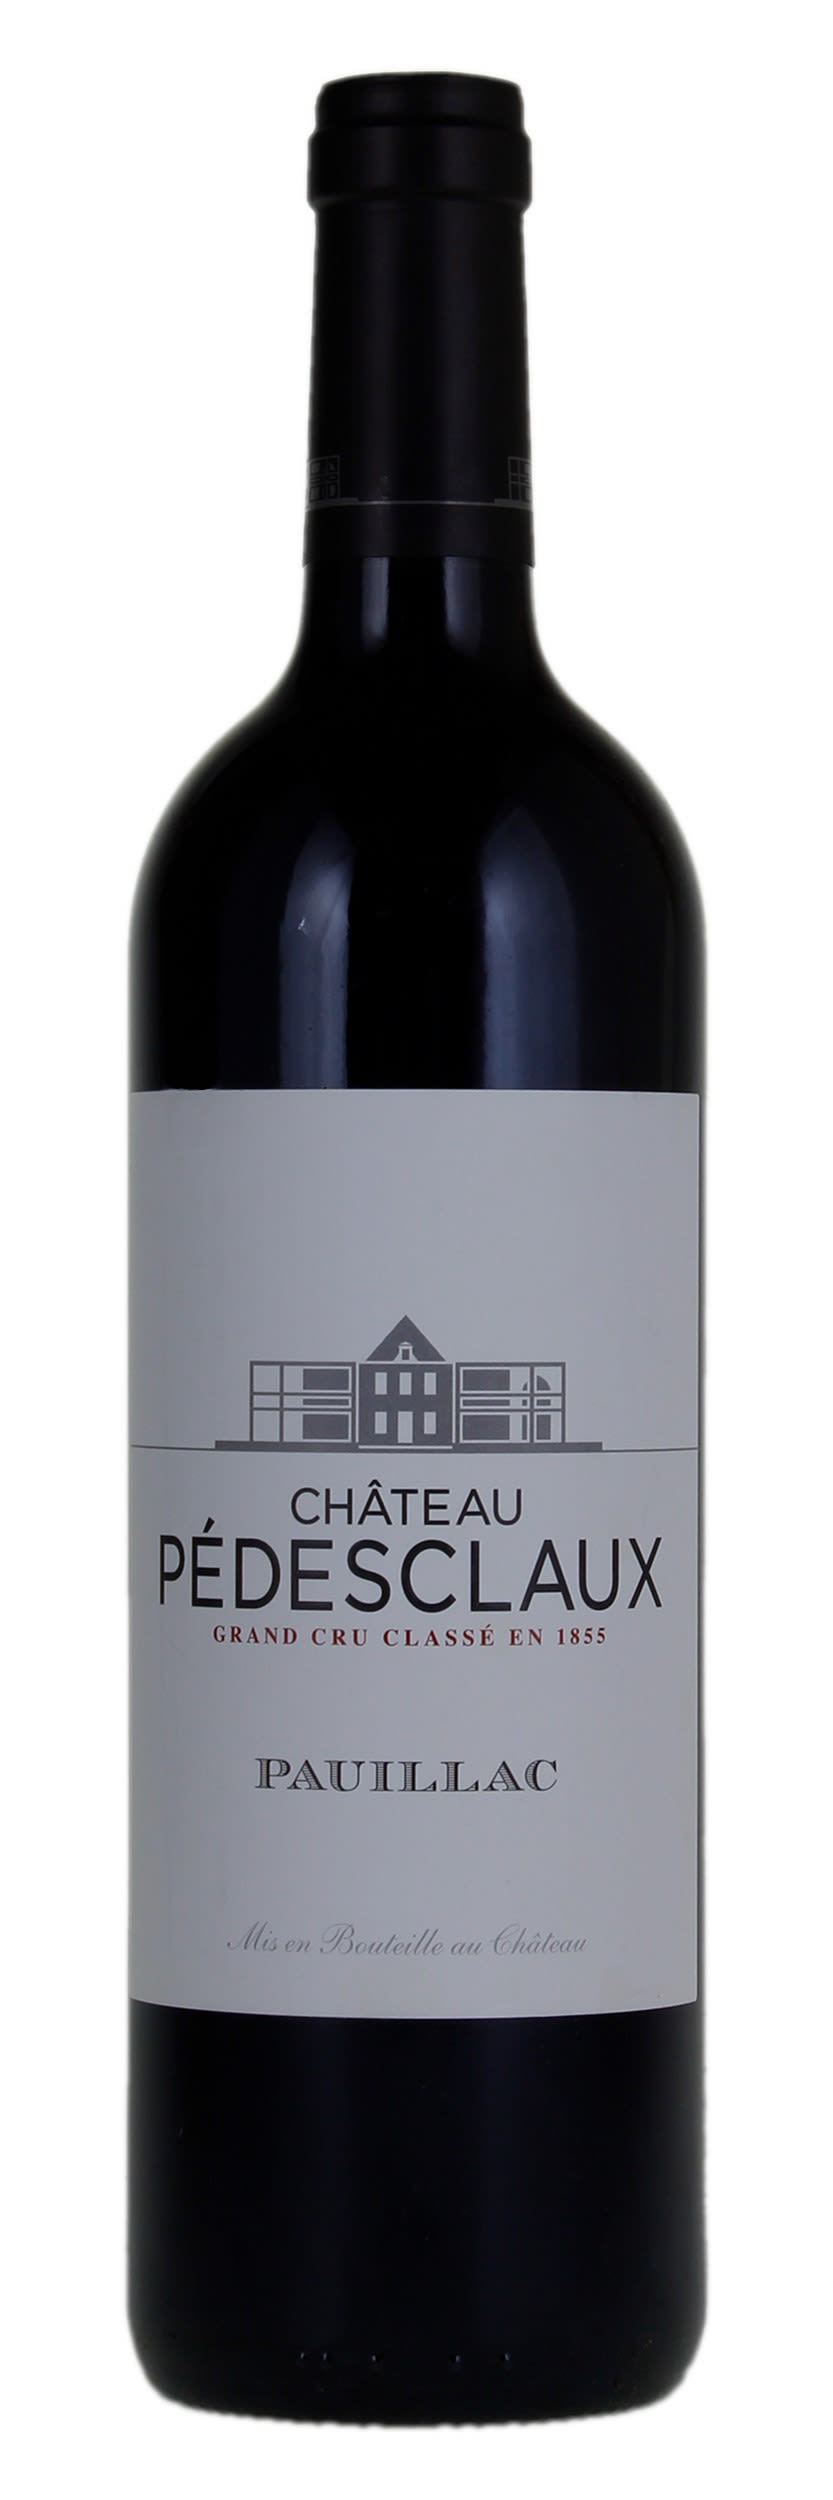 Chateau Pedesclaux - Pauillac 2020 (750ml) (750ml)